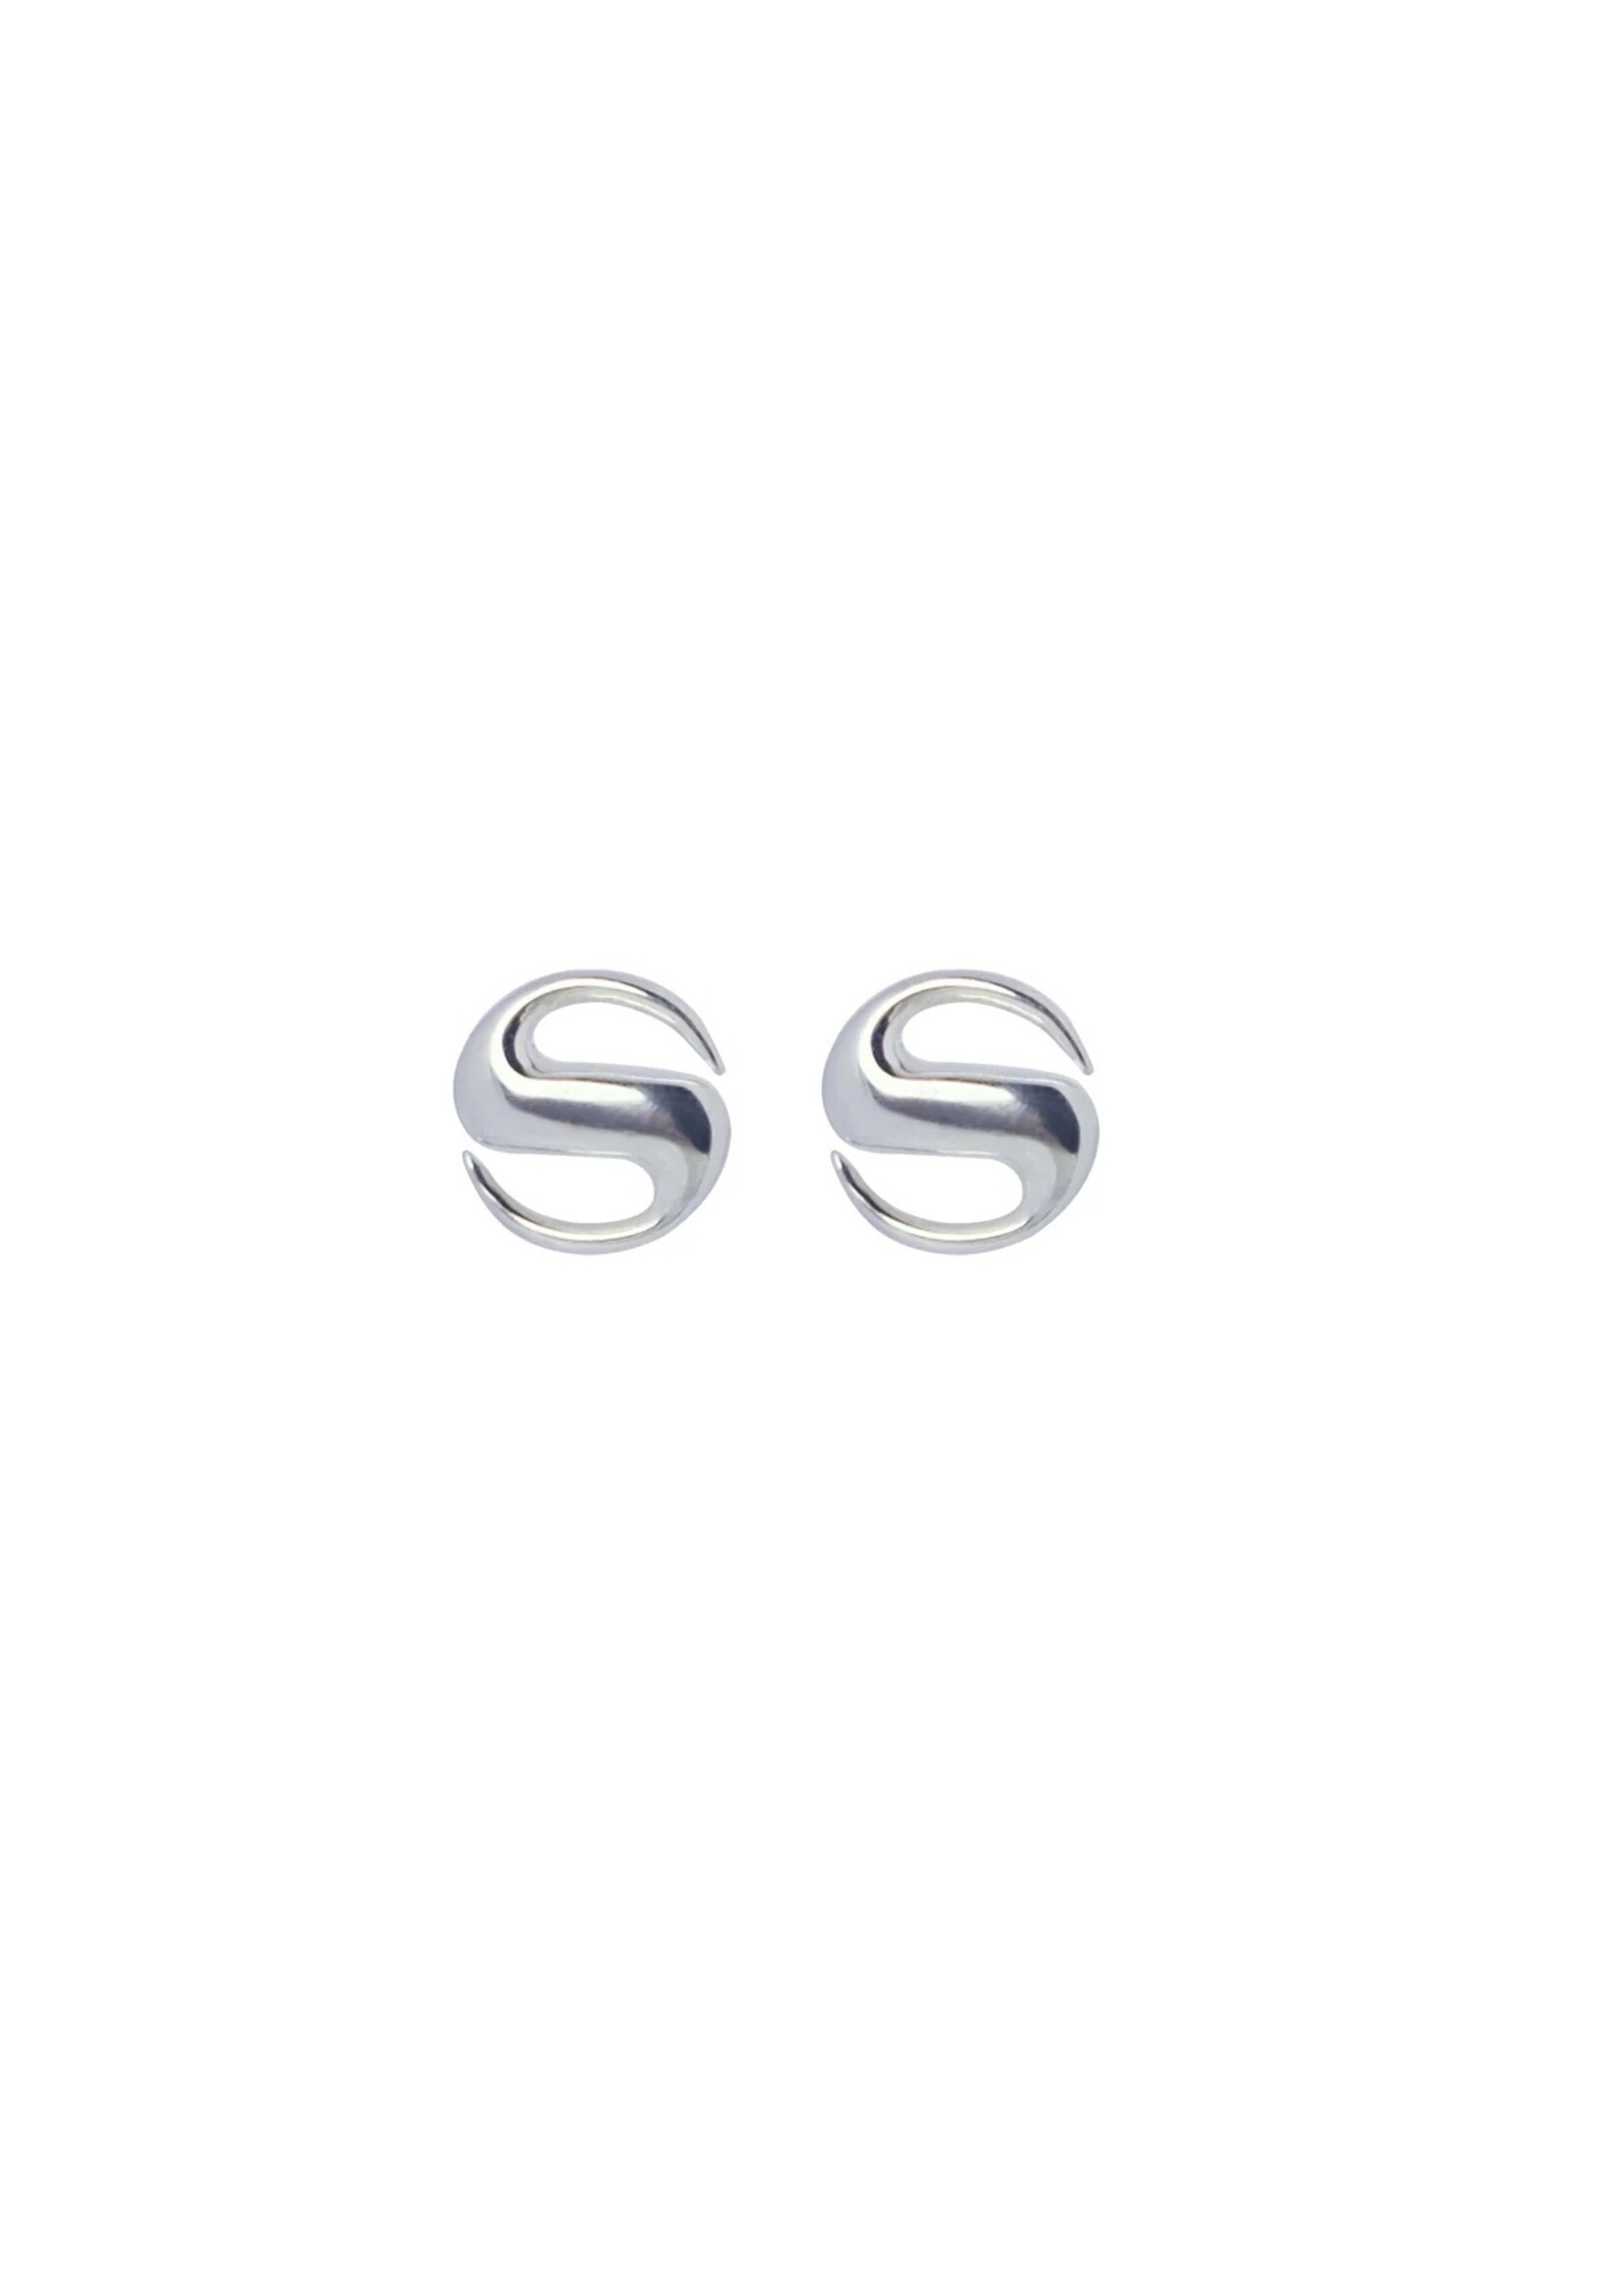 VARON RWND Mini Earrings in Sterling Silver